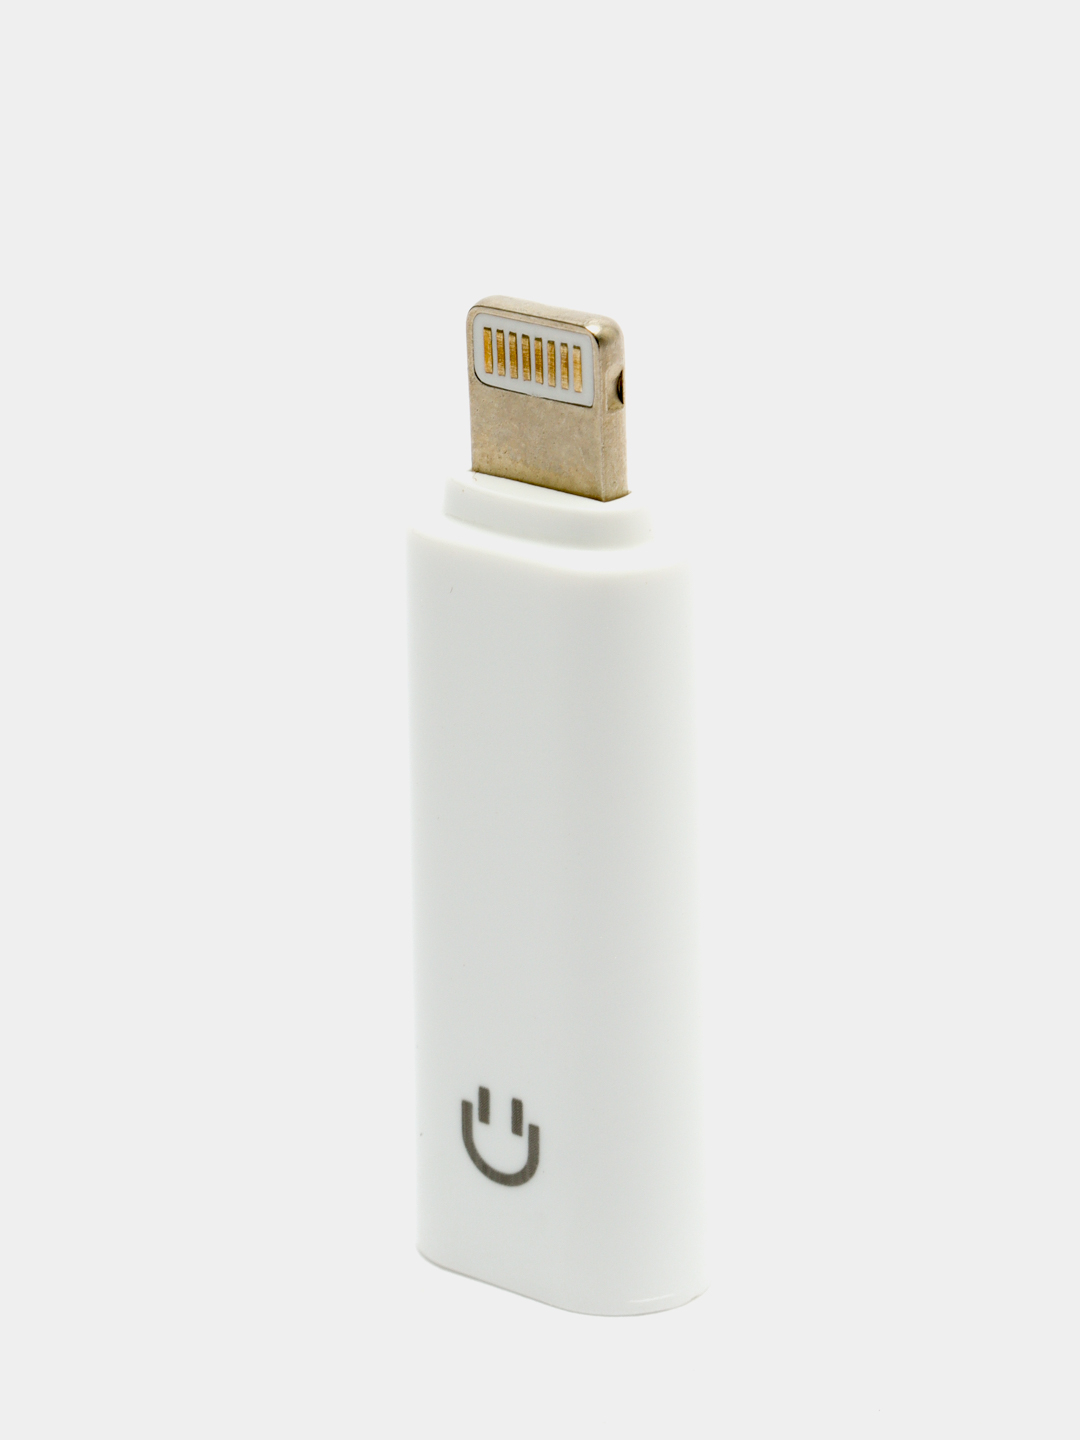  Bluetooth адаптер наушников для айфон iPhone, Lightning на .